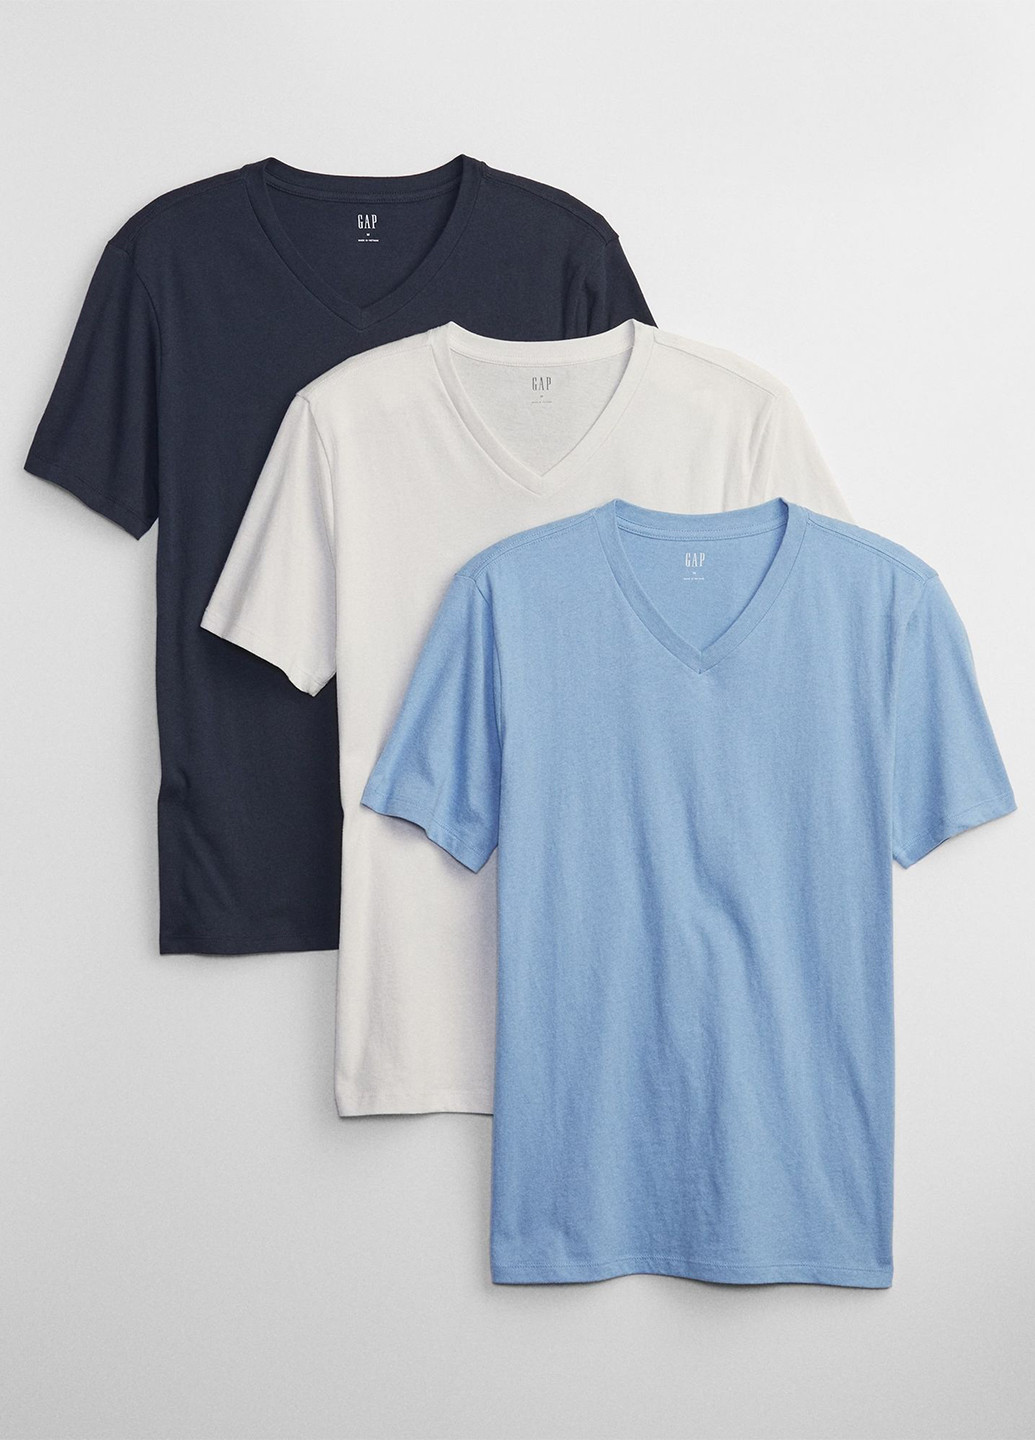 Комбинированная футболка (3 шт.) Gap